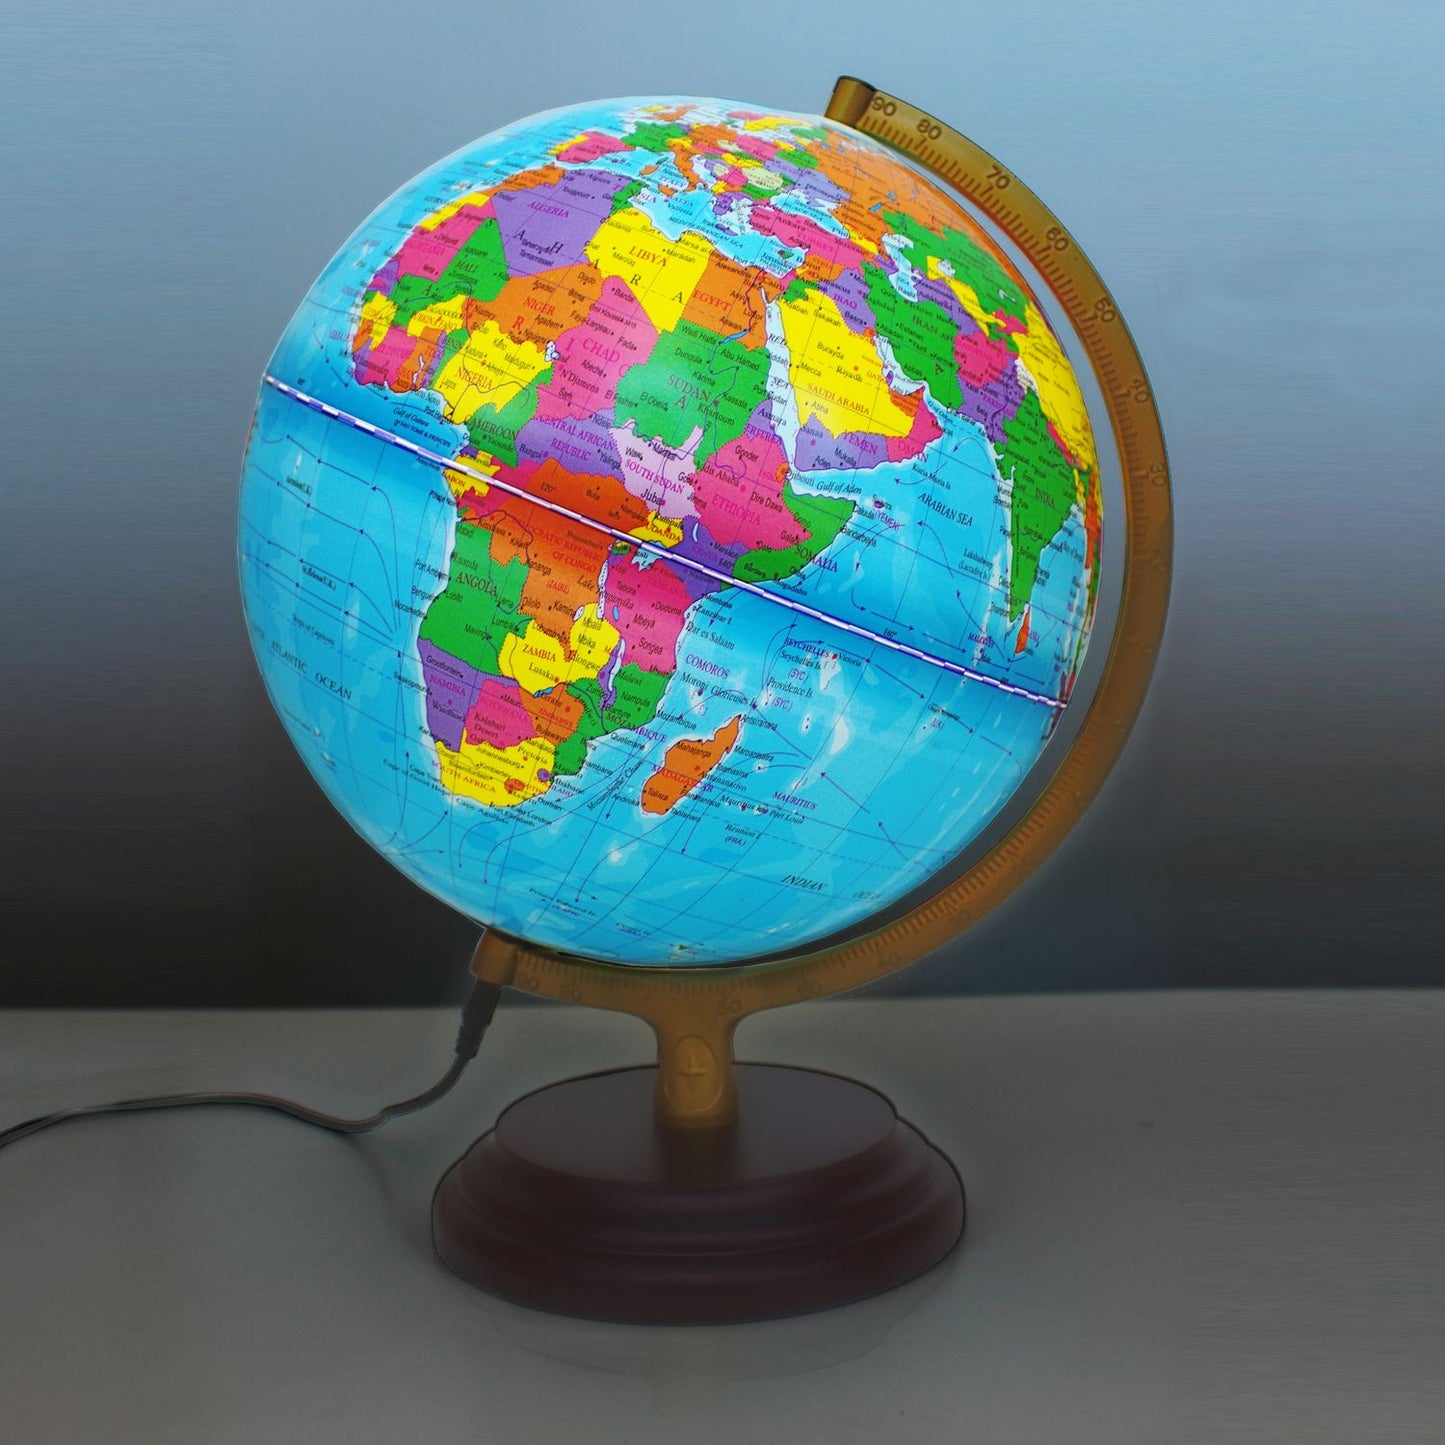 Magellan Cimbria globe lumineux 25 cm, image carte politique